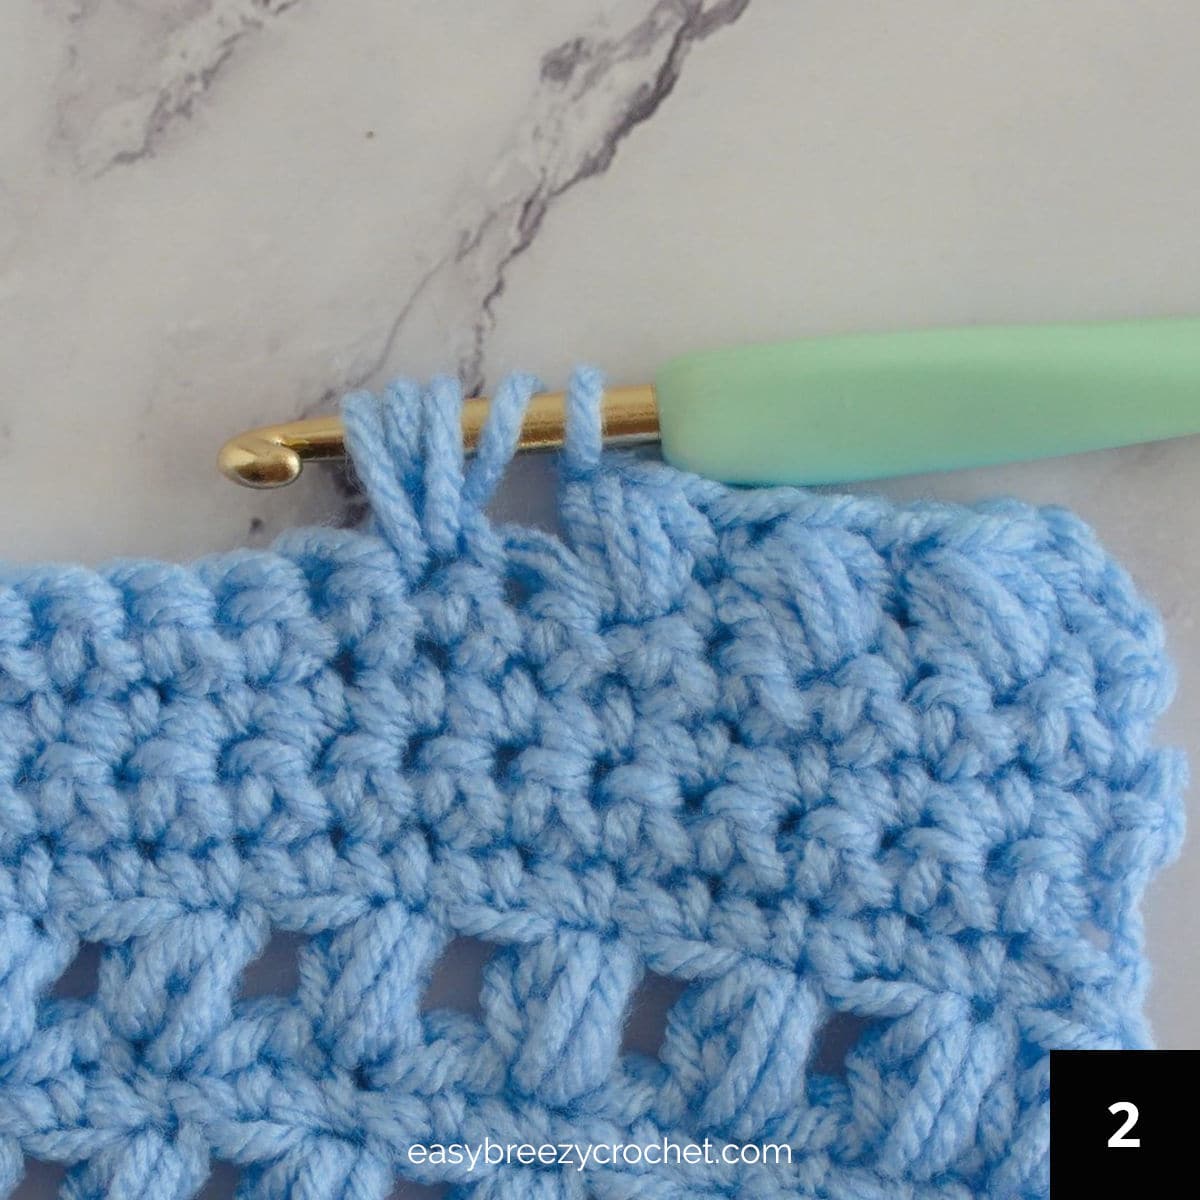 Five loops on a crochet hook.